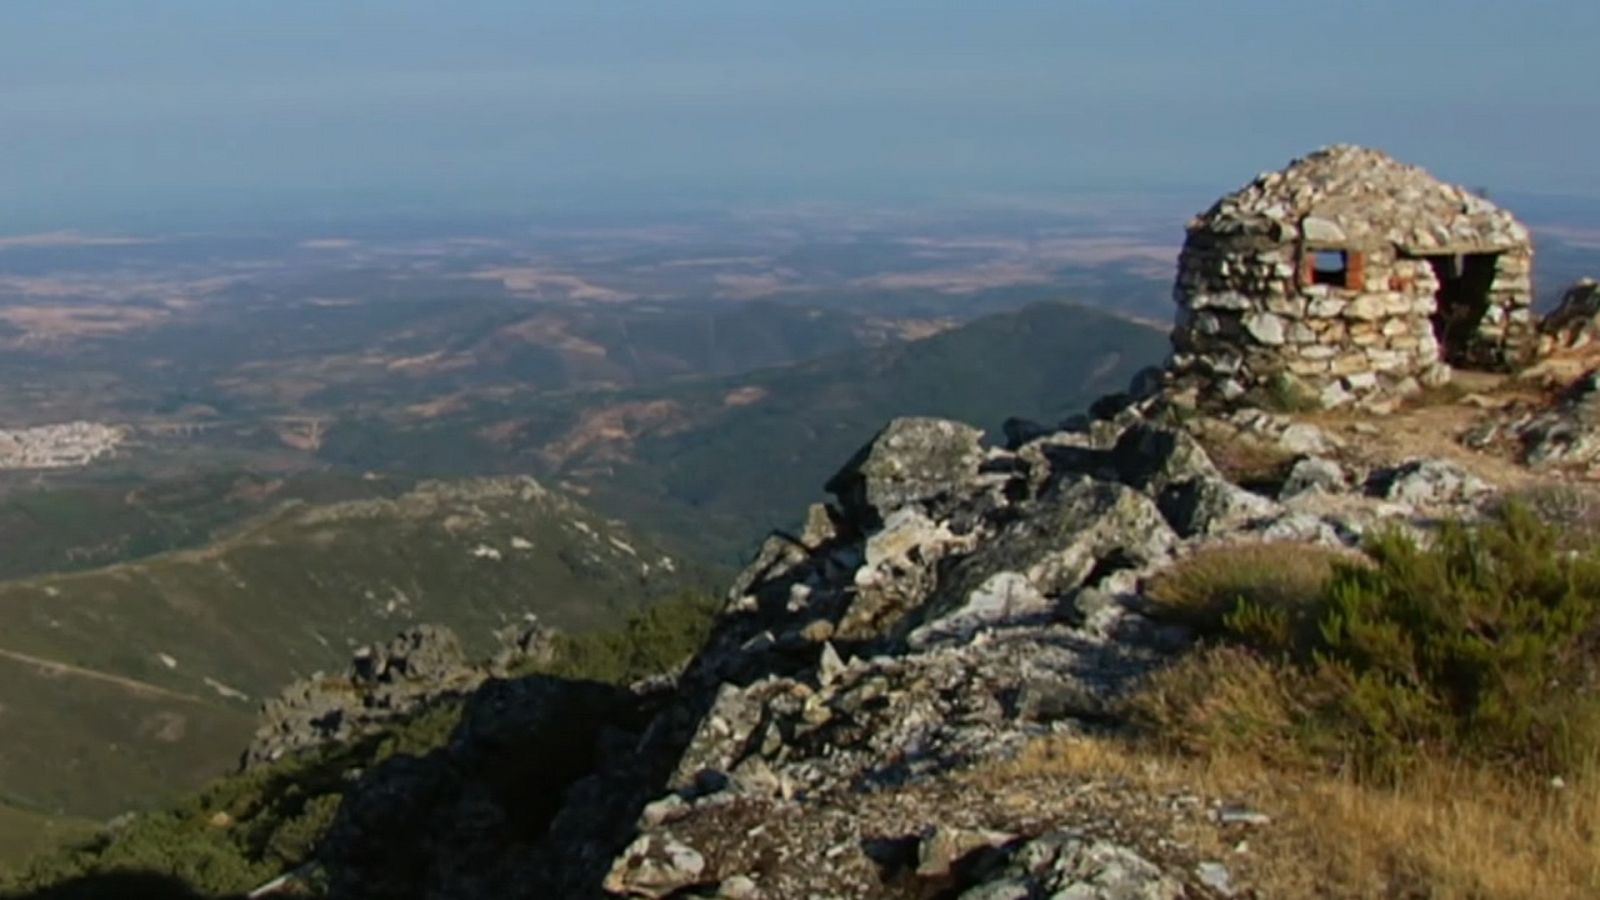 Turismo rural en Europa - Geoparque de Villuercas y las entrañas de Ibor - Documental en RTVE